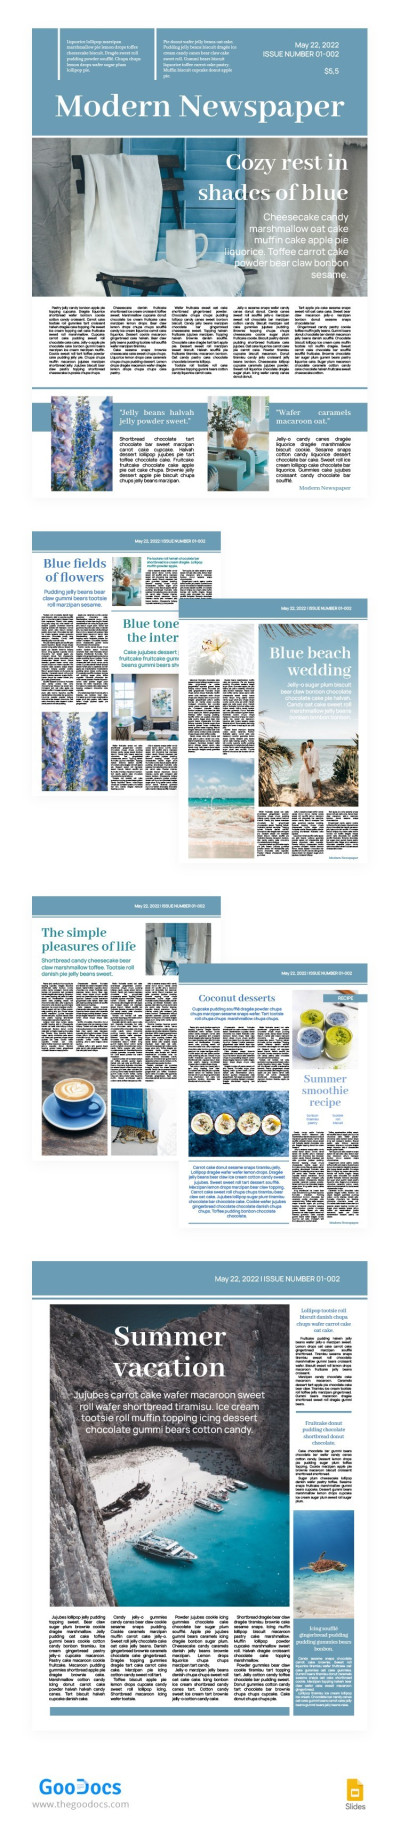 Modern Newspaper in Blue Tones Template